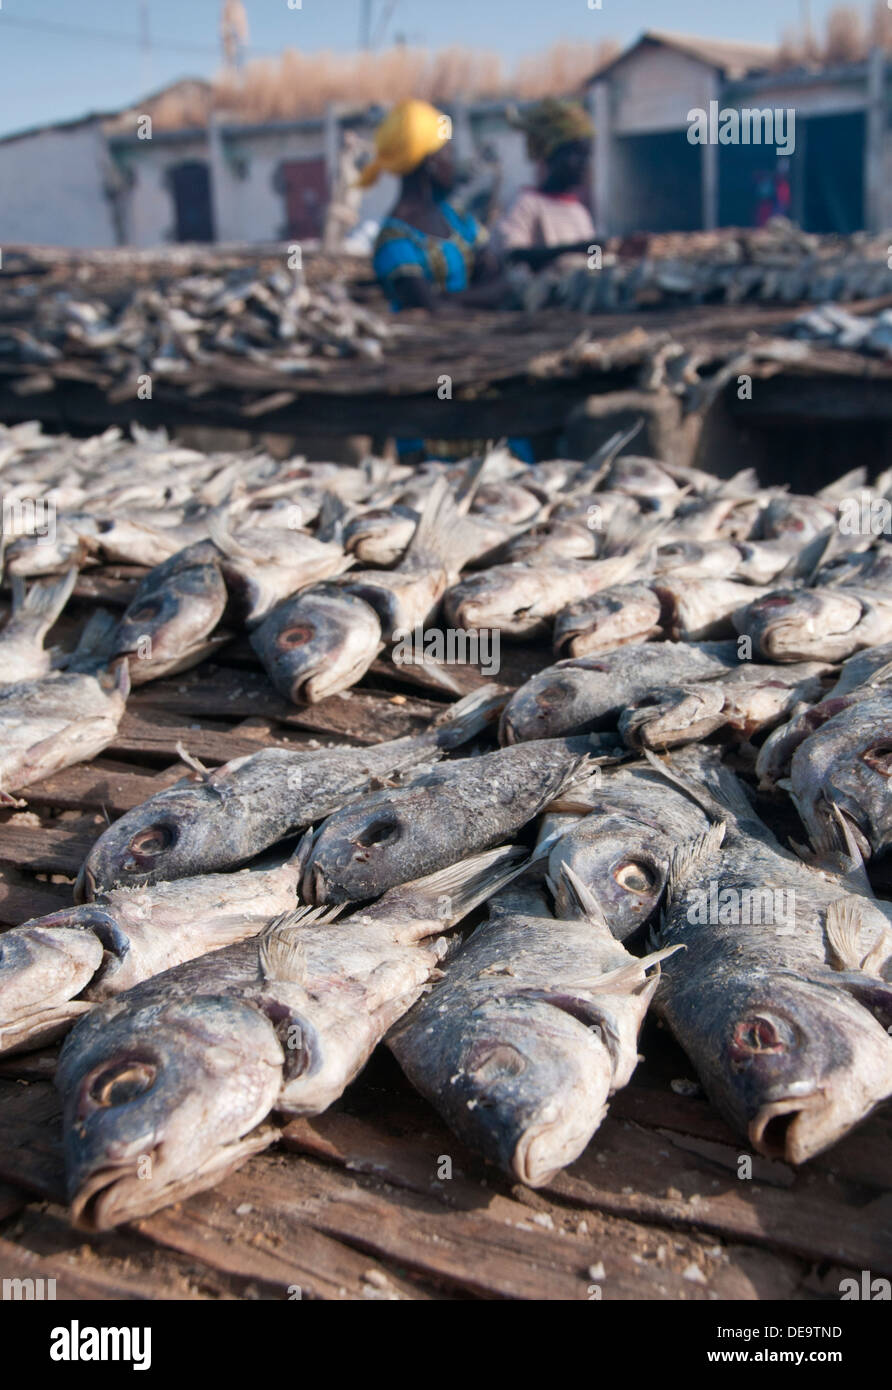 Le séchage du poisson sur les casiers, village de pêcheurs de Tanji, Gambie, Afrique de l'Ouest Banque D'Images